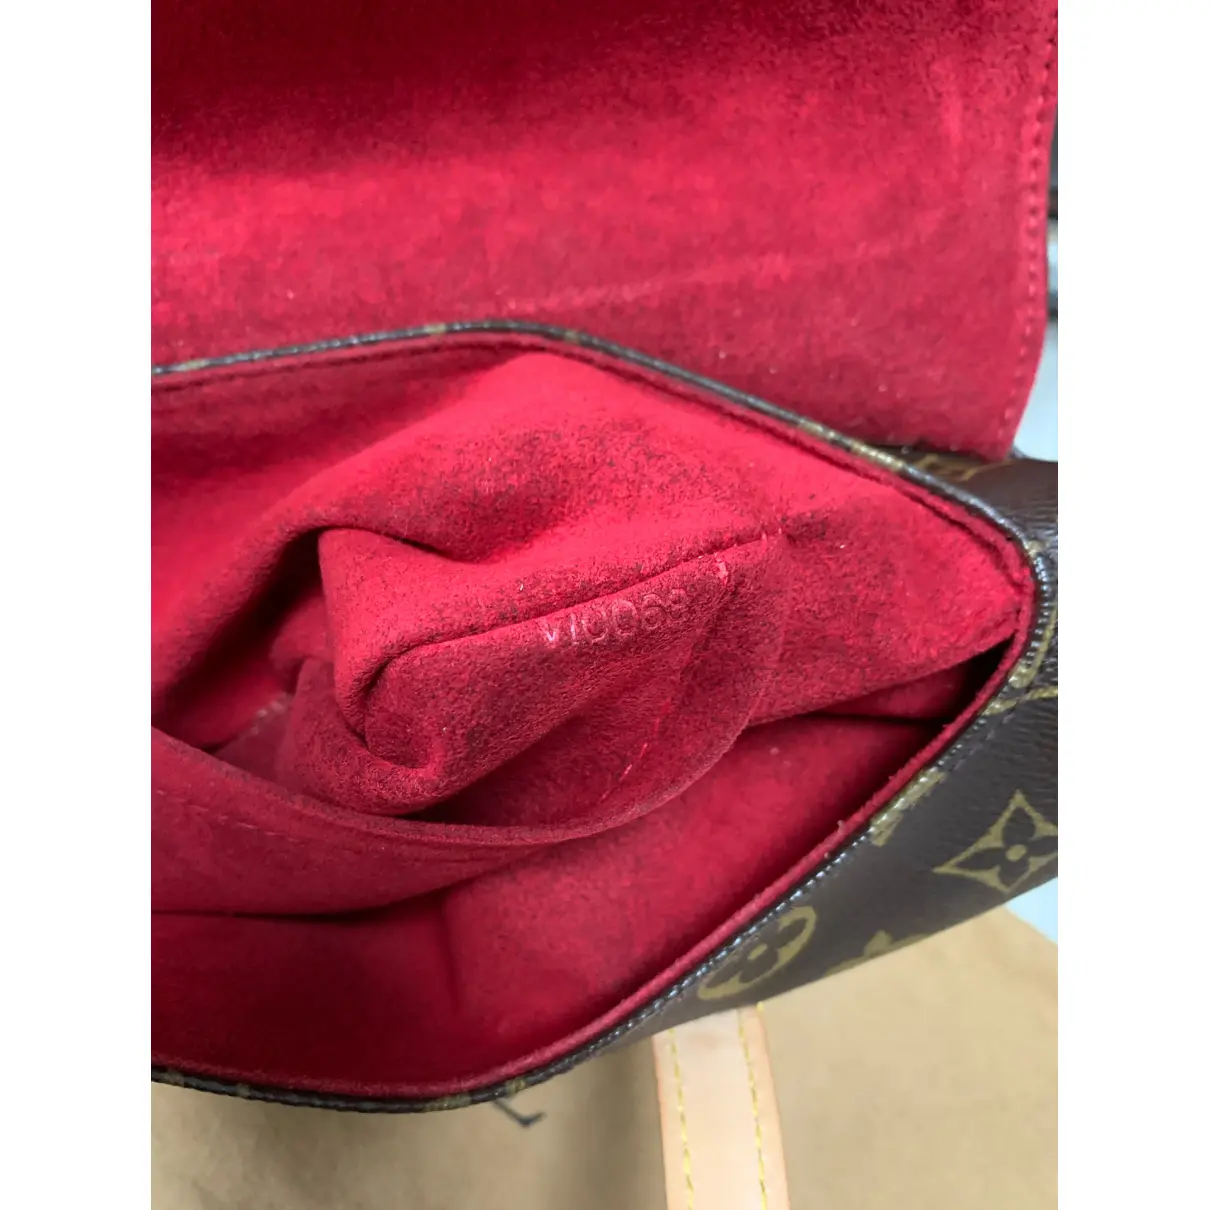 Buy Louis Vuitton Sonatine cloth handbag online